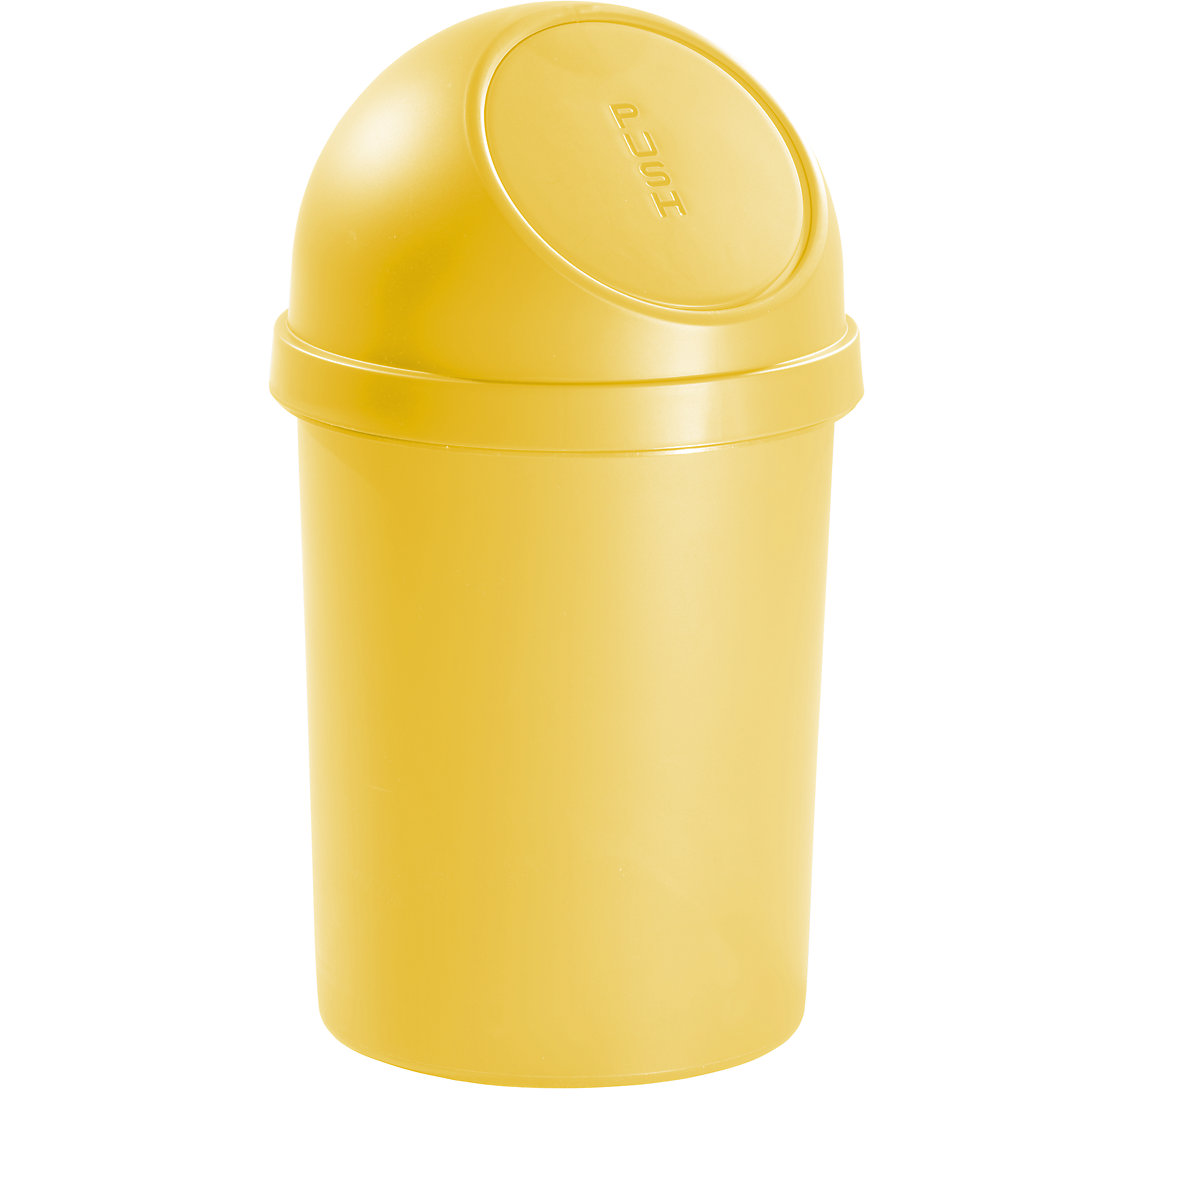 Push-Abfallbehälter aus Kunststoff helit